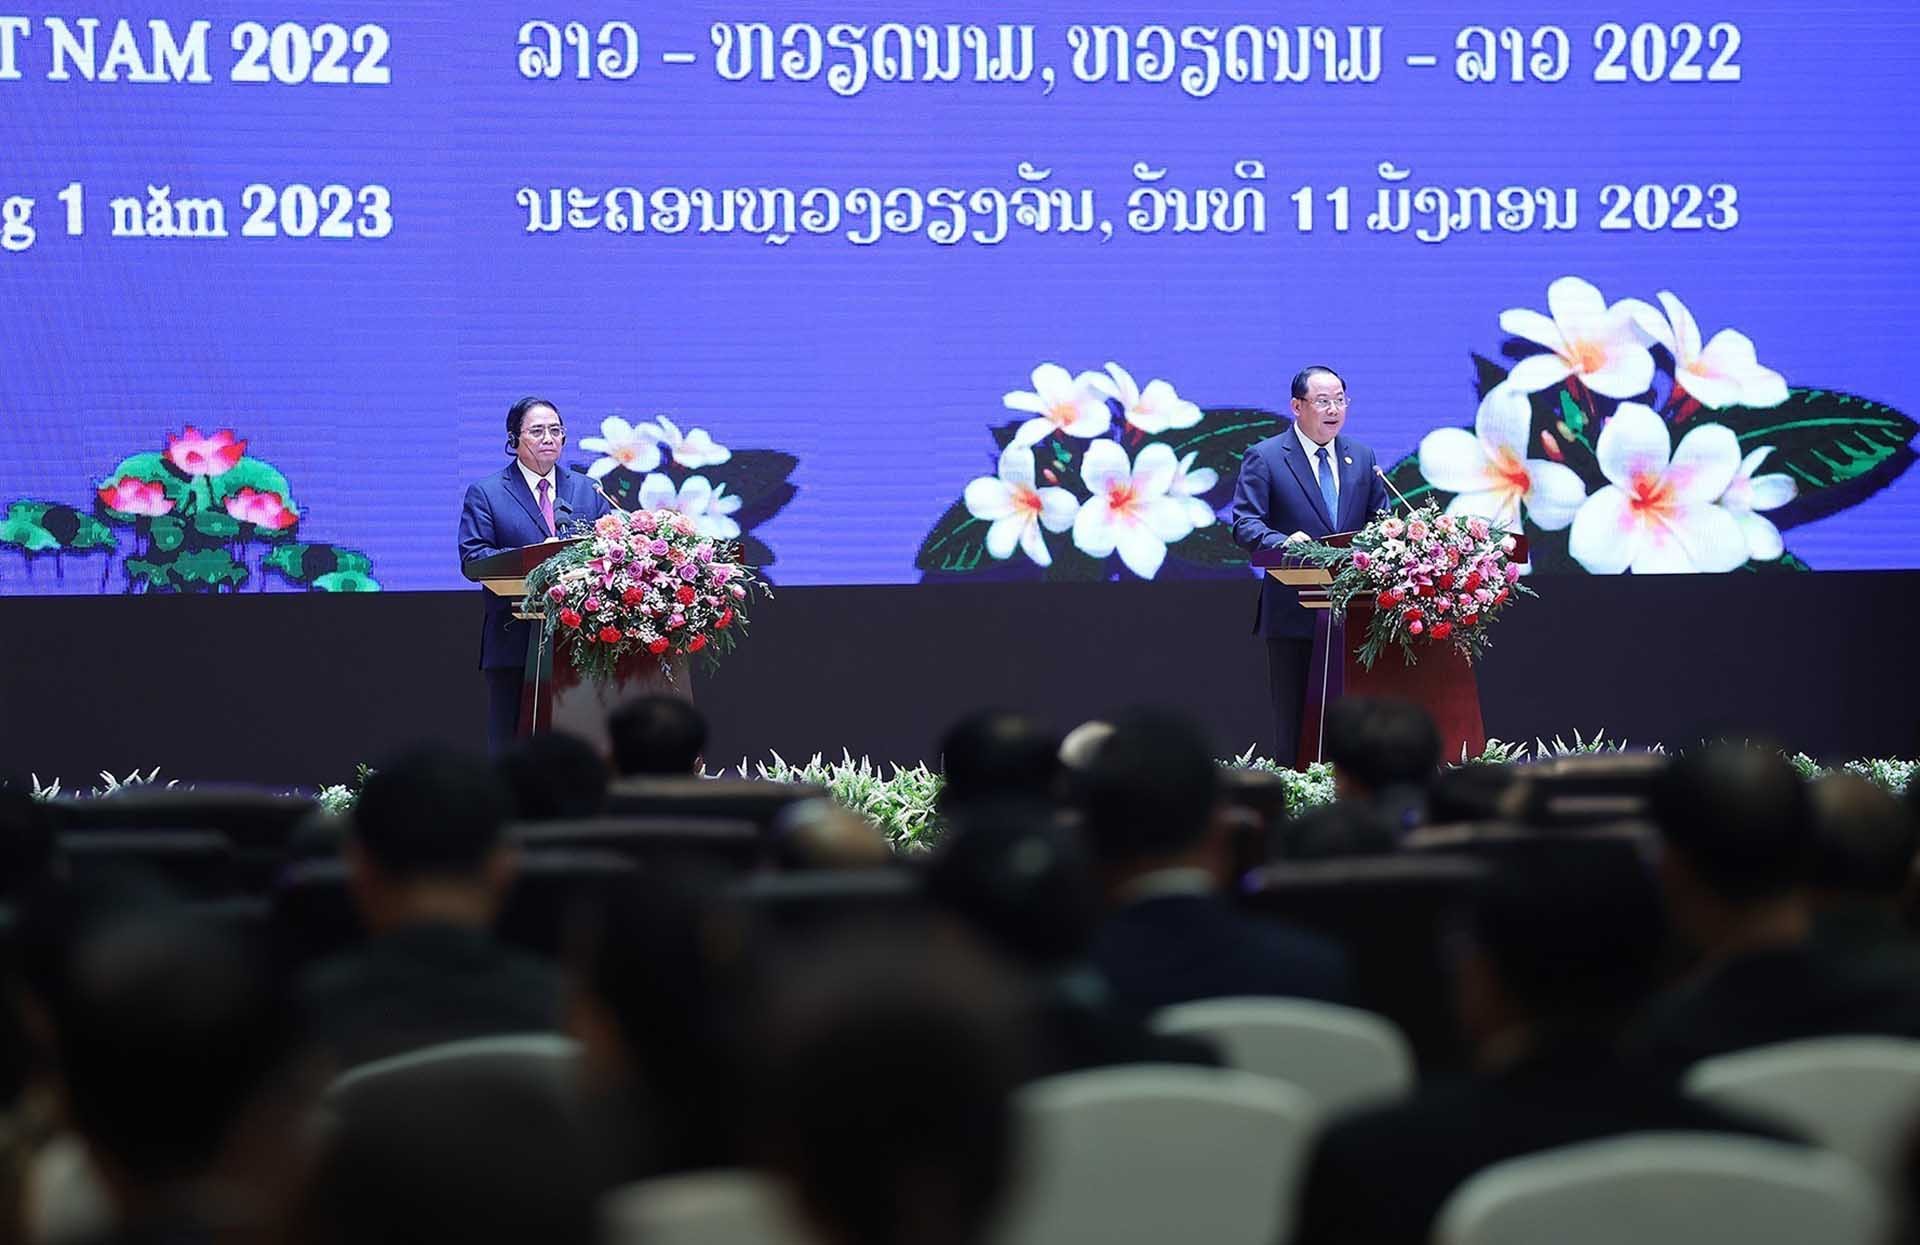 Thủ tướng Phạm Minh Chính và Thủ tướng Sonexay Siphandone tại Lễ tổng kết Năm Đoàn kết hữu nghị Việt Nam-Lào, Lào-Việt Nam 2022. (Nguồn: TTXVN)